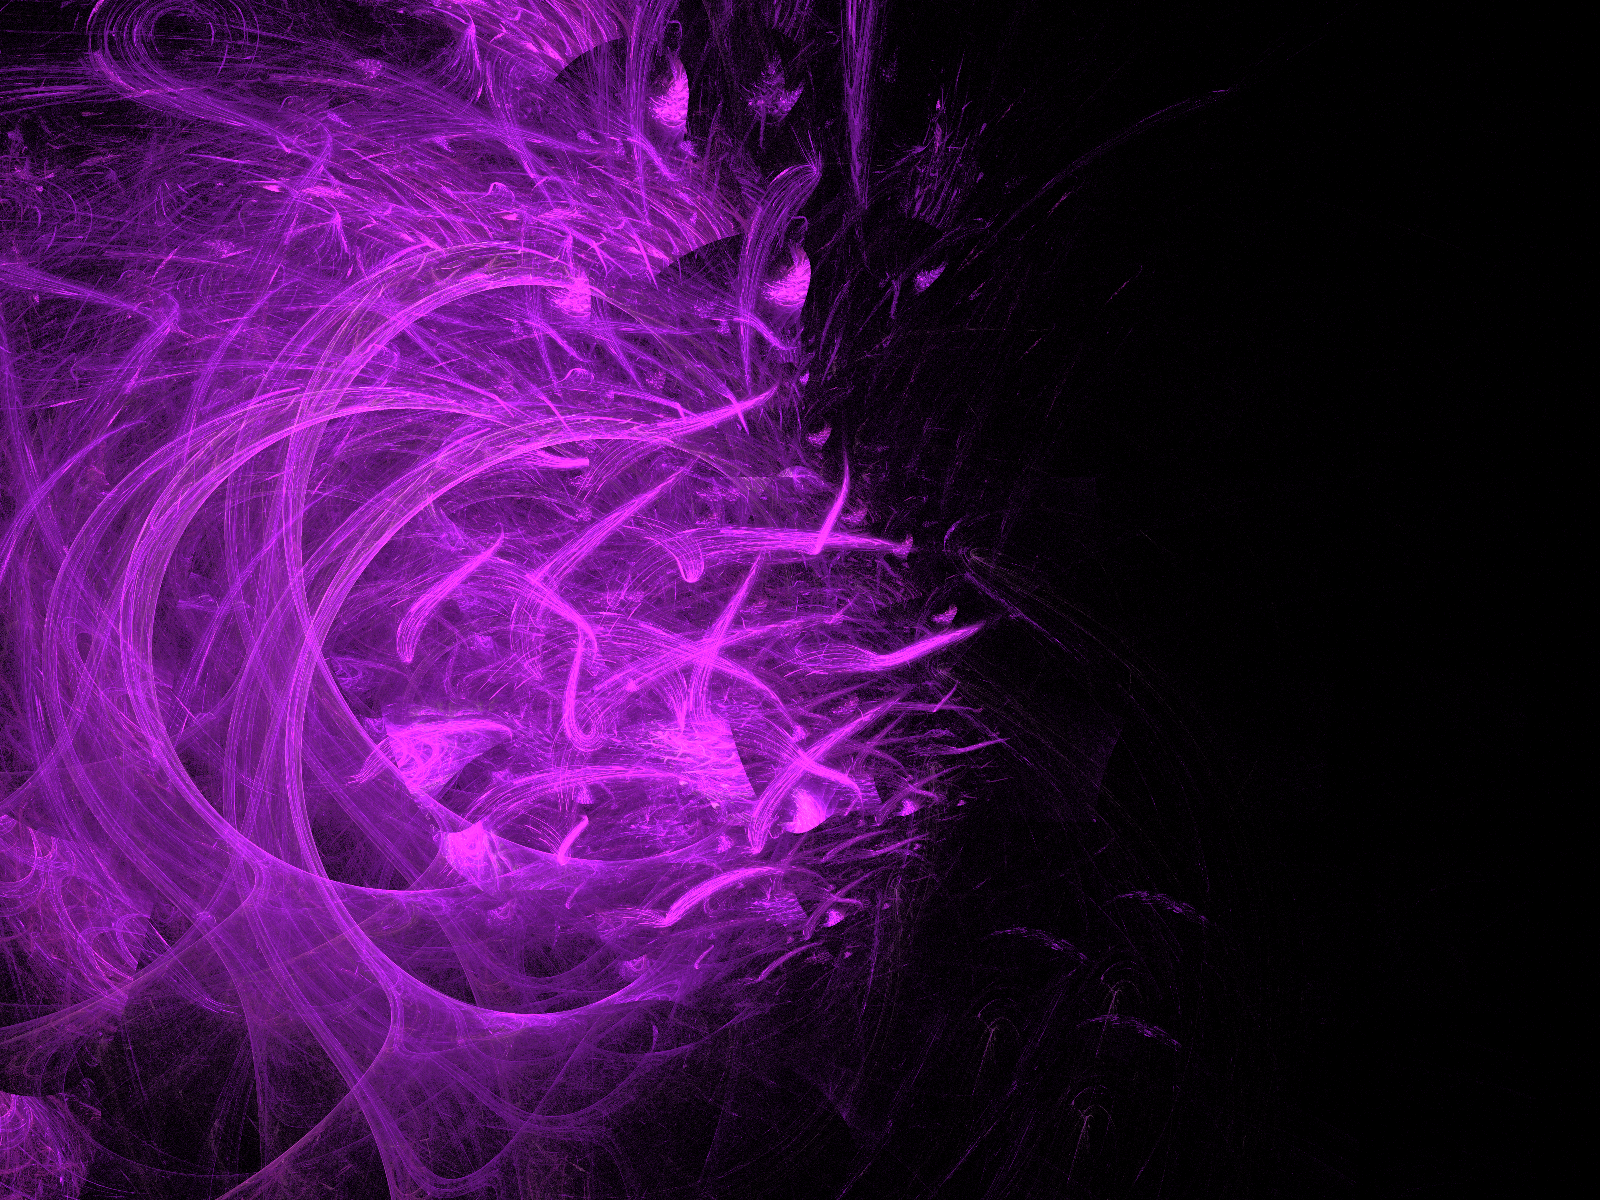  Wallpaper   Beautiful Purple Backgrounds for Desktop Best HD Desktop